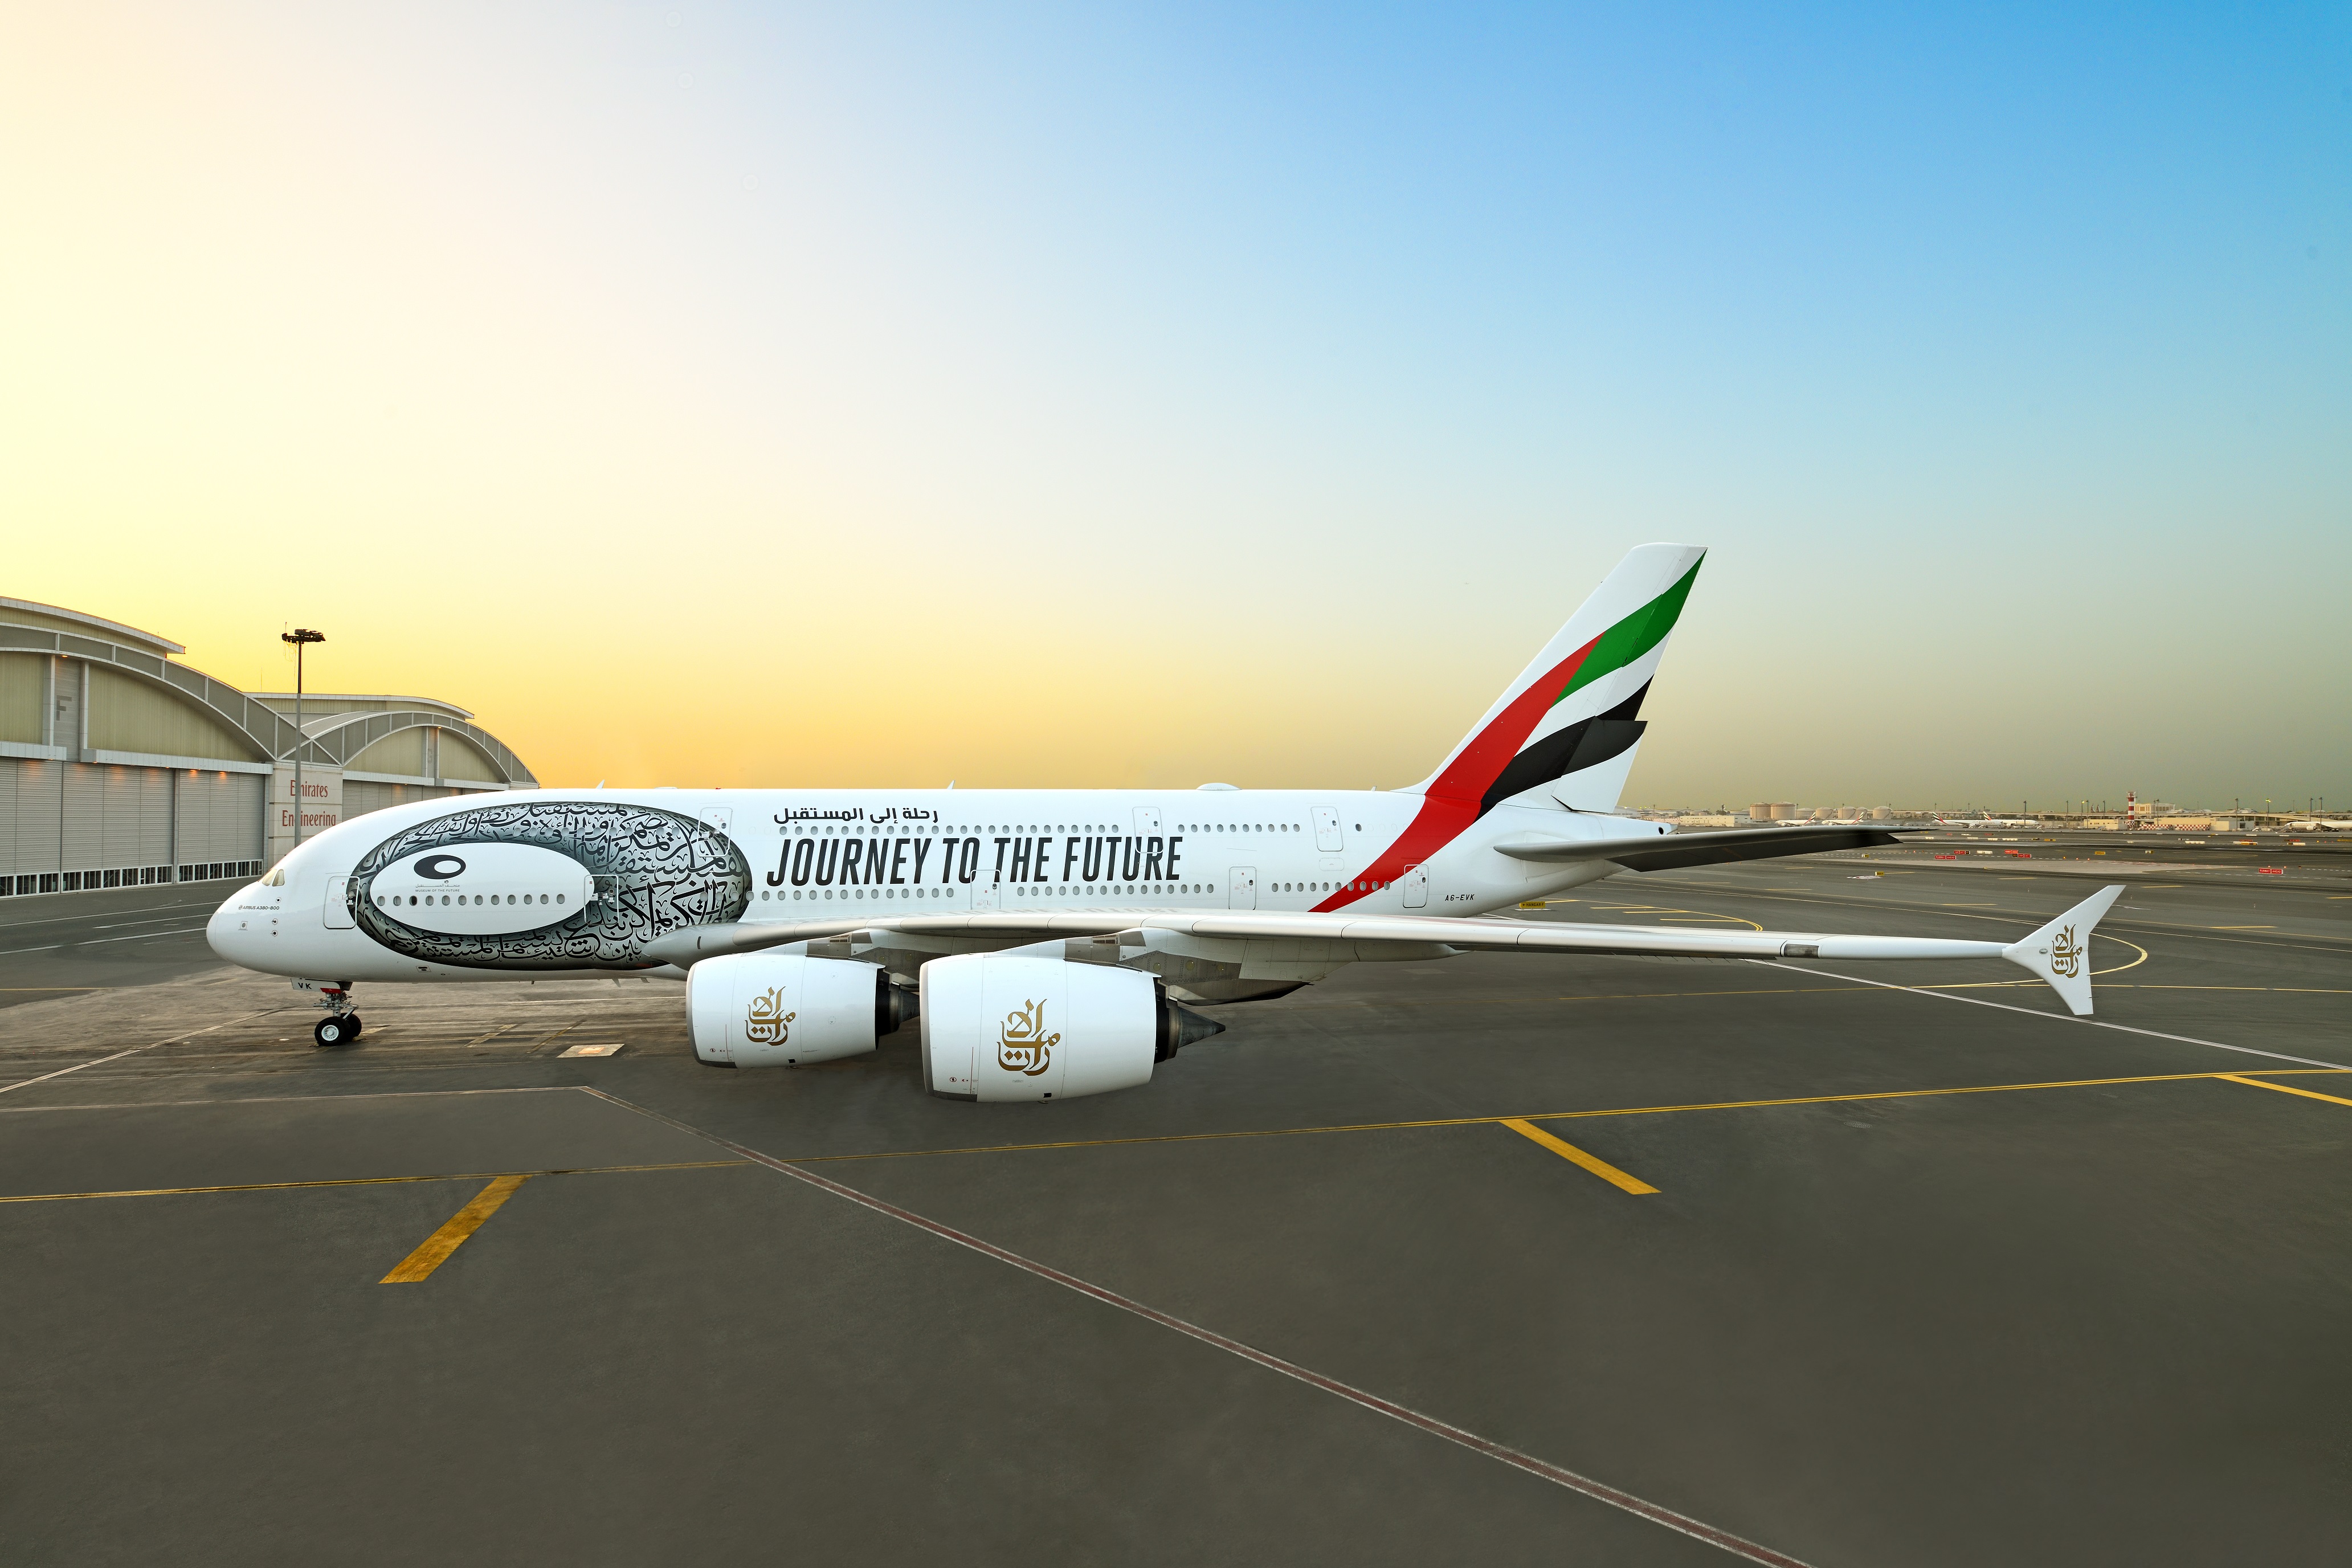 エミレーツ航空 Emirates アメニティ 人形 飛行機 ドバイ万博 fkip